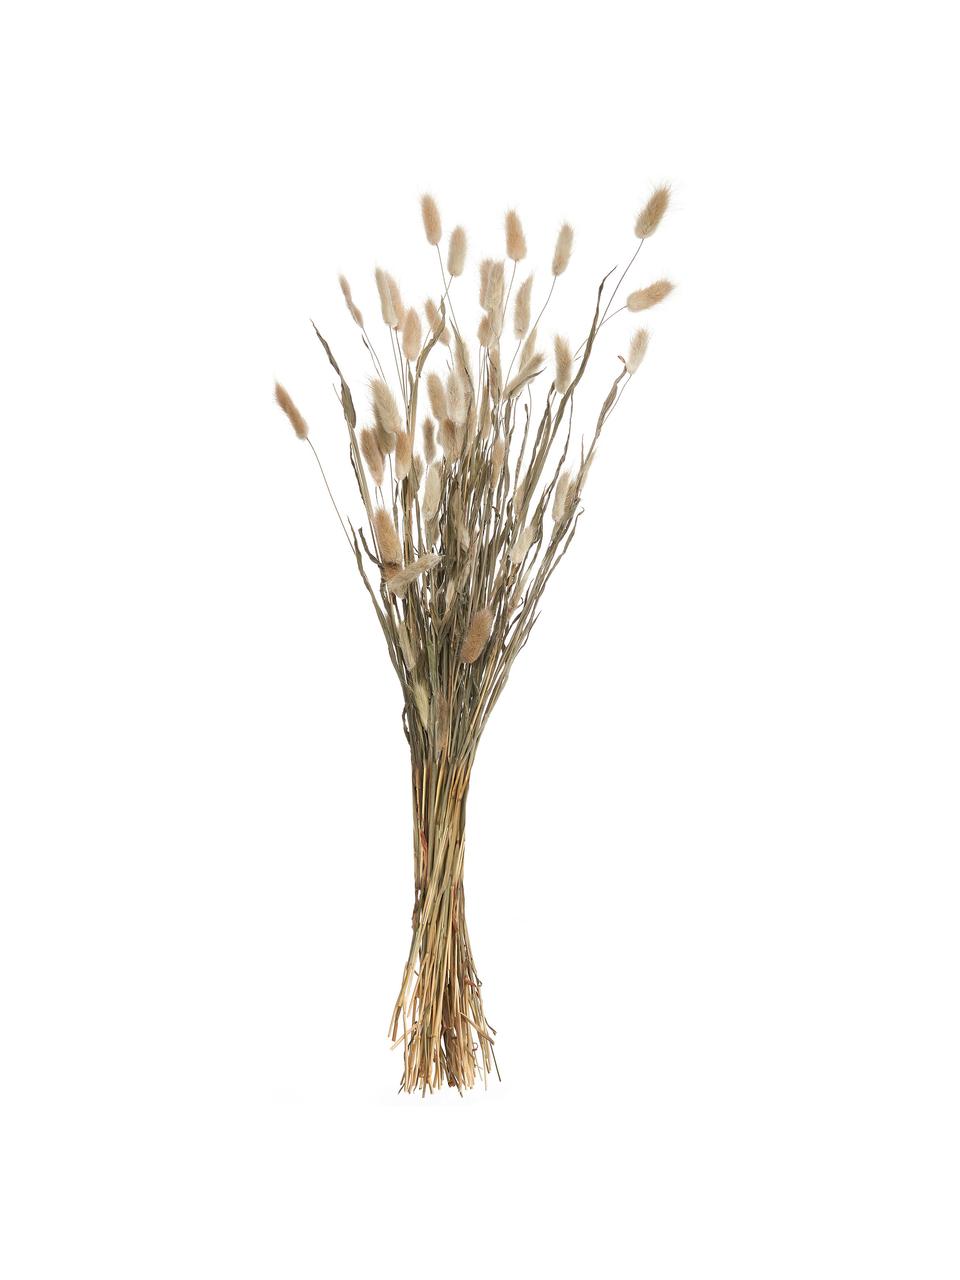 Dekoracyjny lagurus/dmuszek jajowaty, Wysuszone kwiaty, Beżowy, zielony, D 70 cm